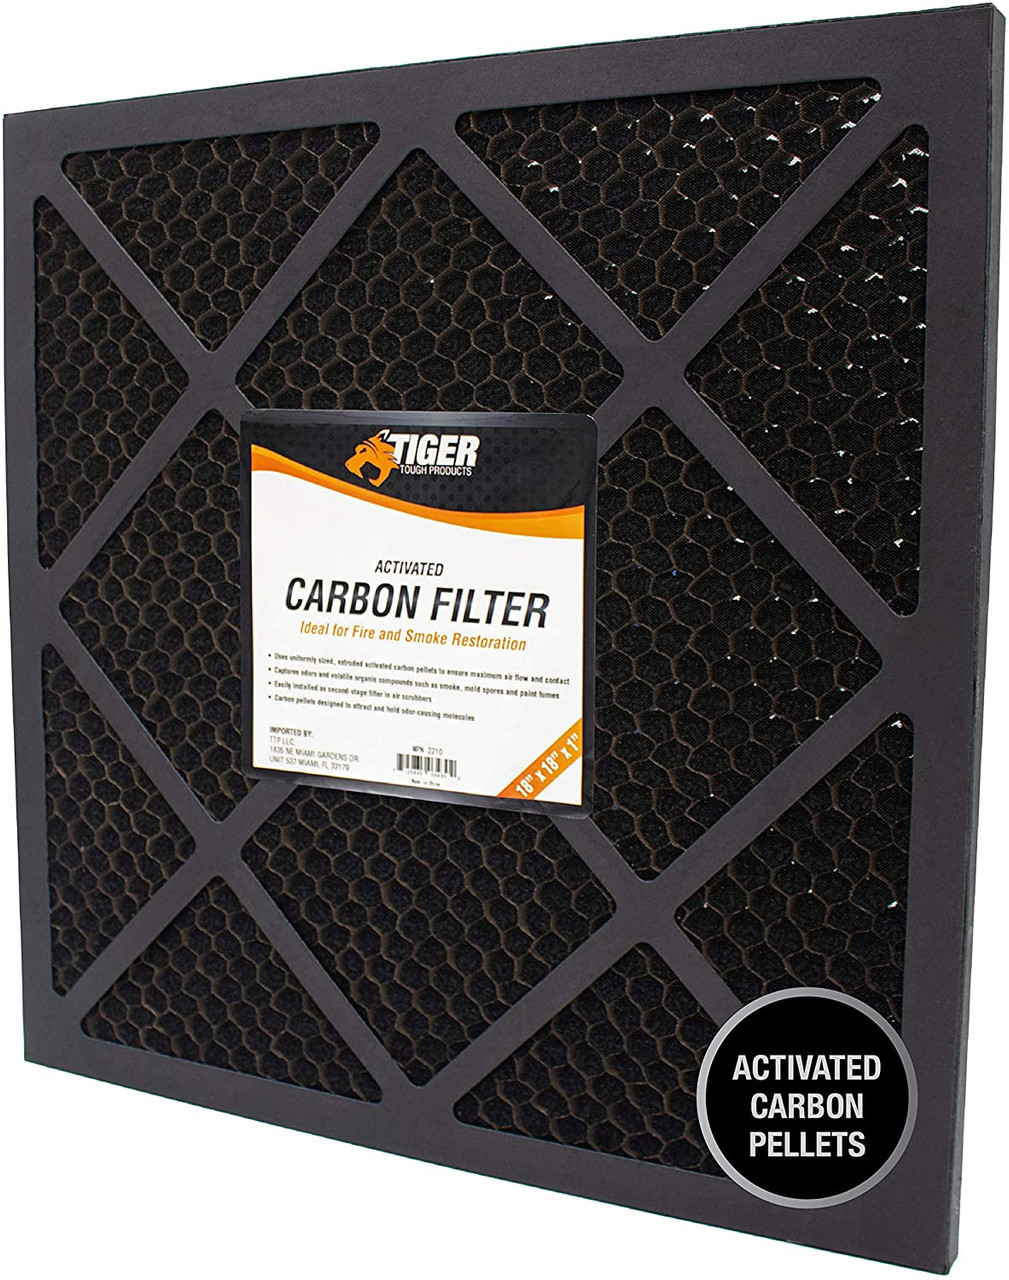 Tiger Tough Carbon Filter 16x16x1